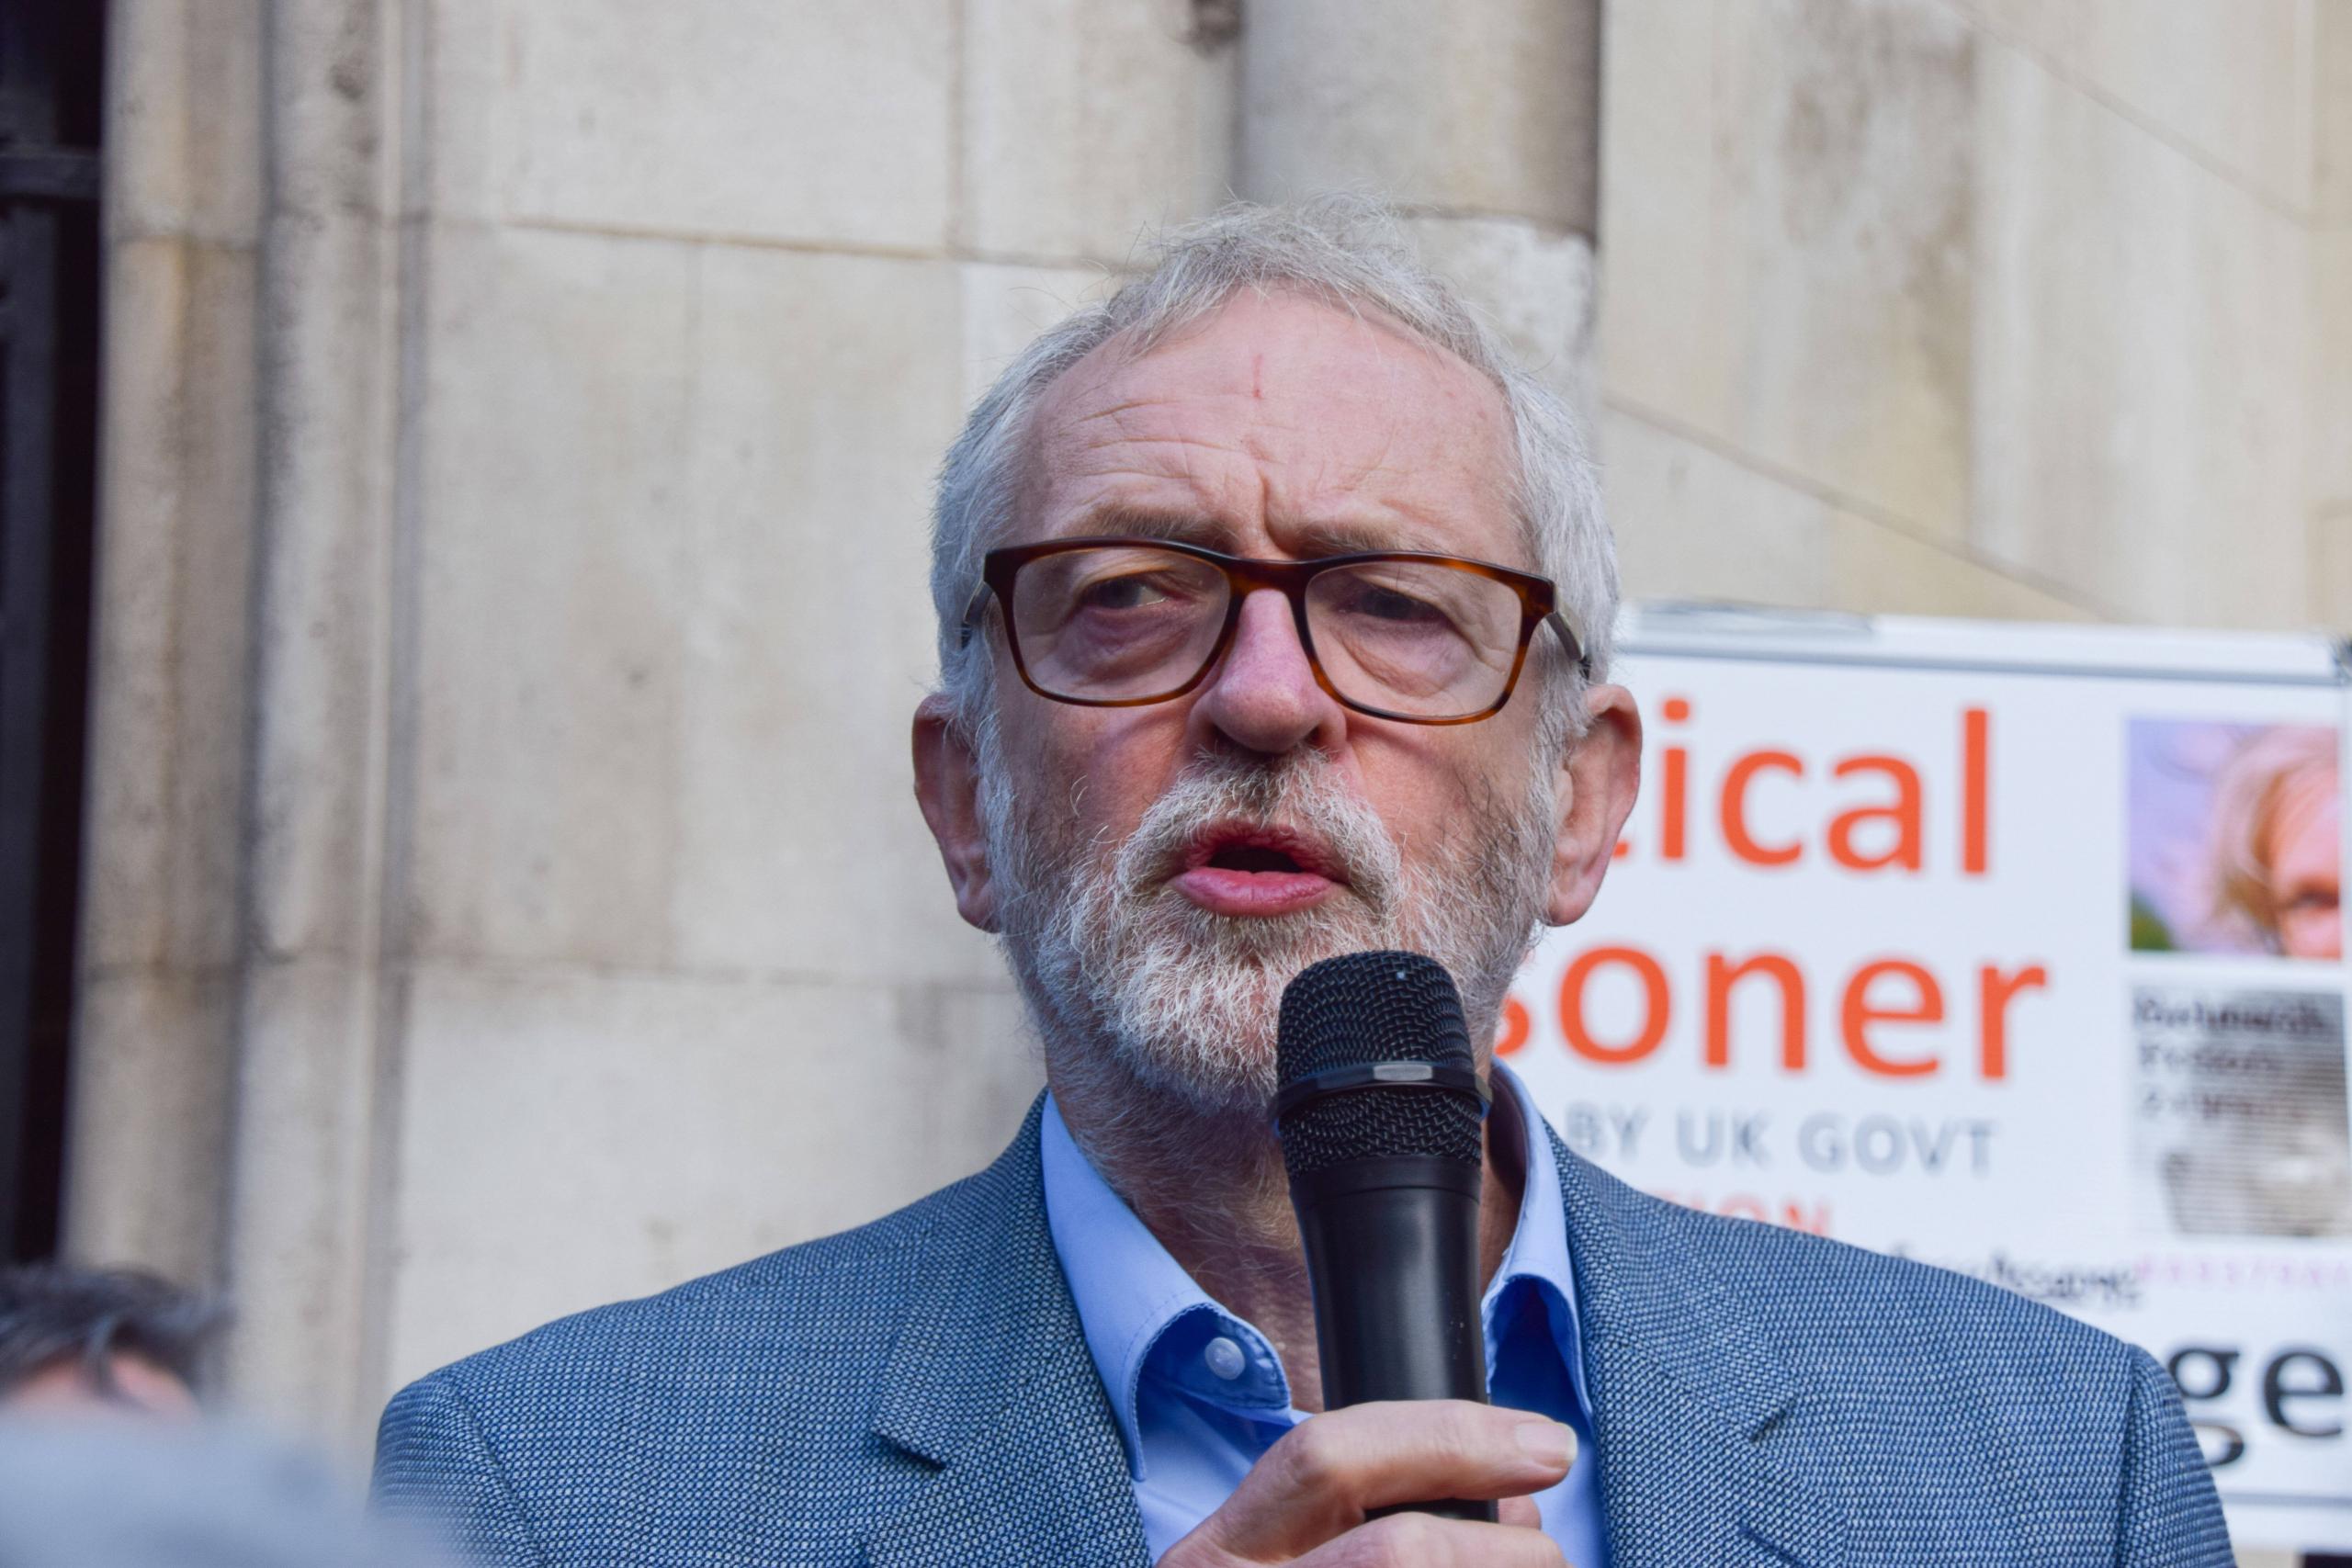 Jeremy Corbyn, ehemaliger Vorsitzender der Labour Party, bei einer Kundgebung zur Unterstützung von Julian Assange, London, 28. Oktober 2021.